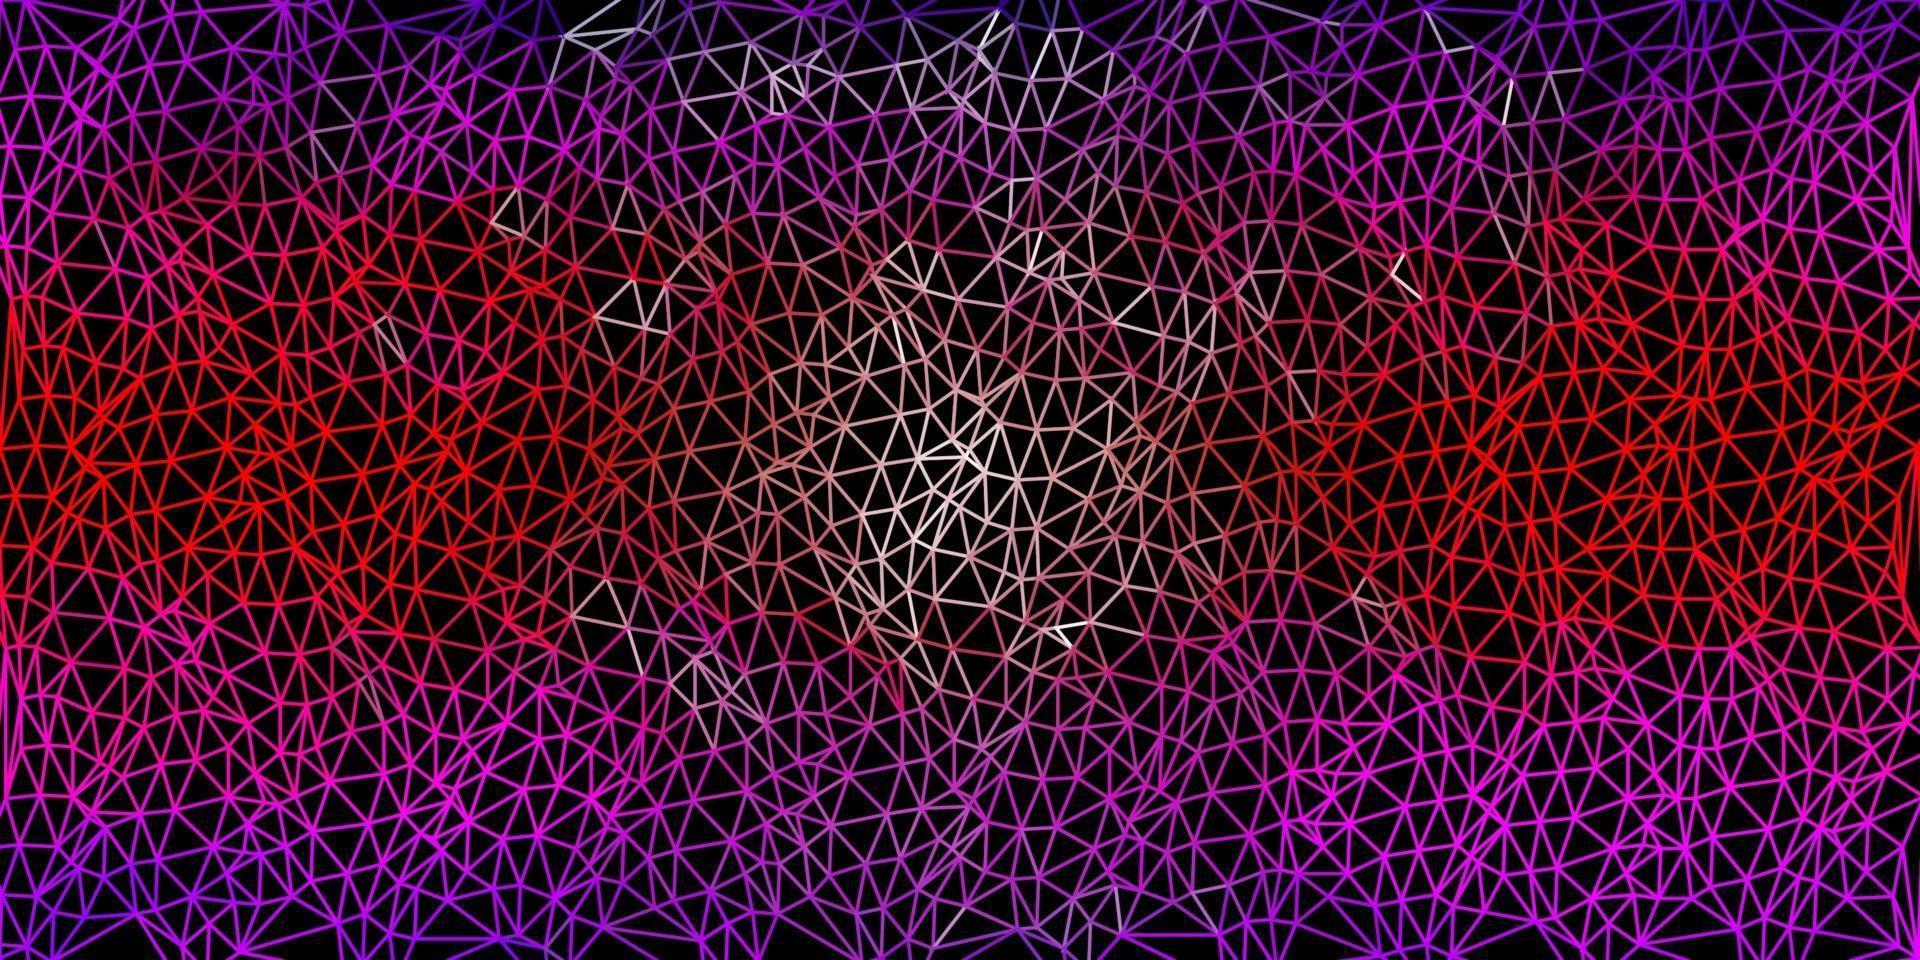 lichtpaars, roze vector driehoek mozaïek behang.